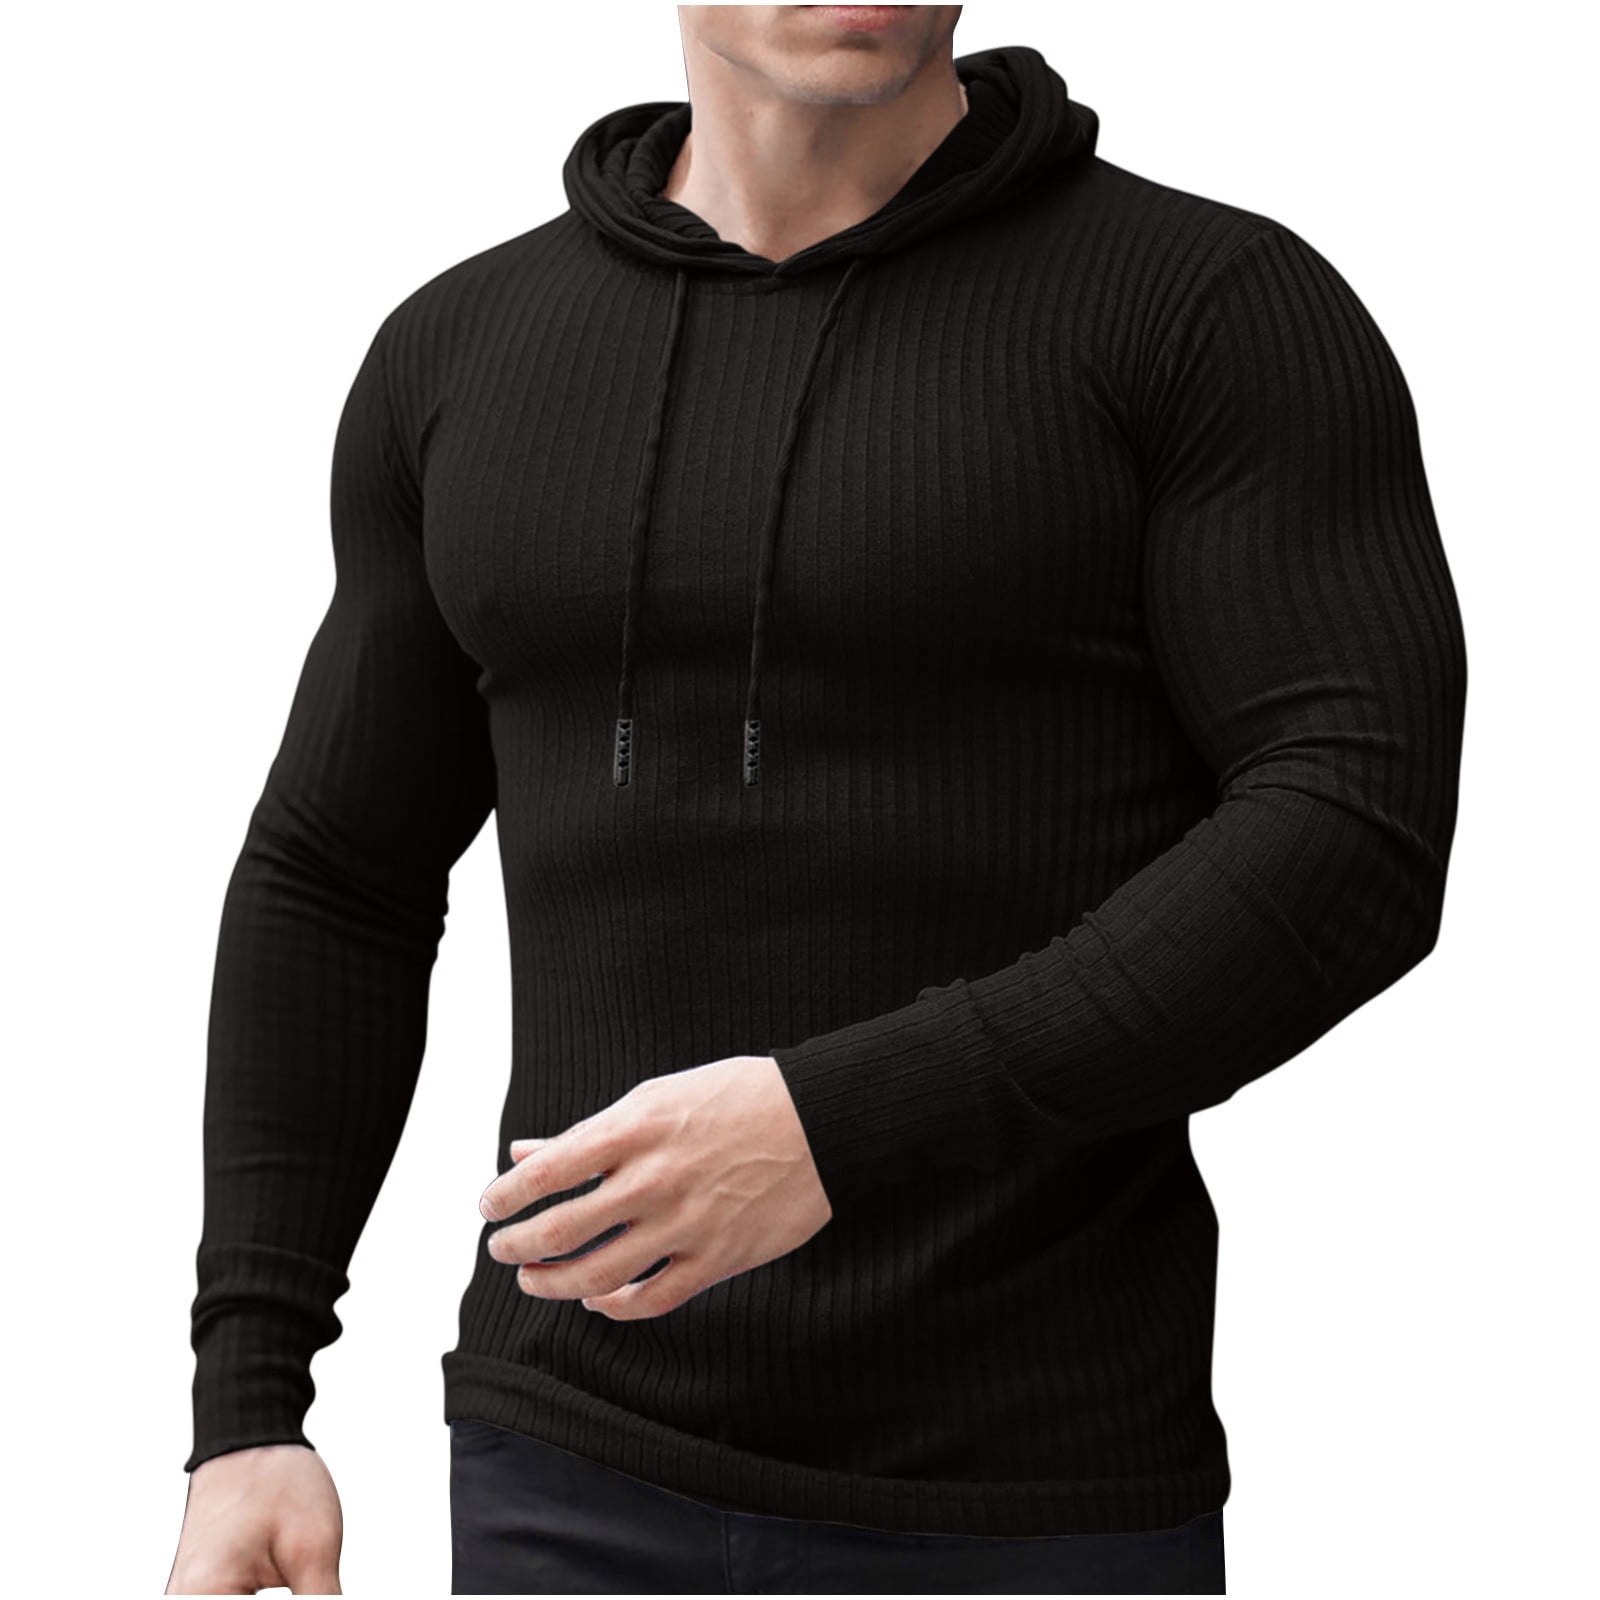  Men's Corduroy Hoodie Sweatshirts Long Sleeve Drawstring Hoodie  Pullover Sweatshirt Casual Pullover Tops(Beige,S) : Sports & Outdoors